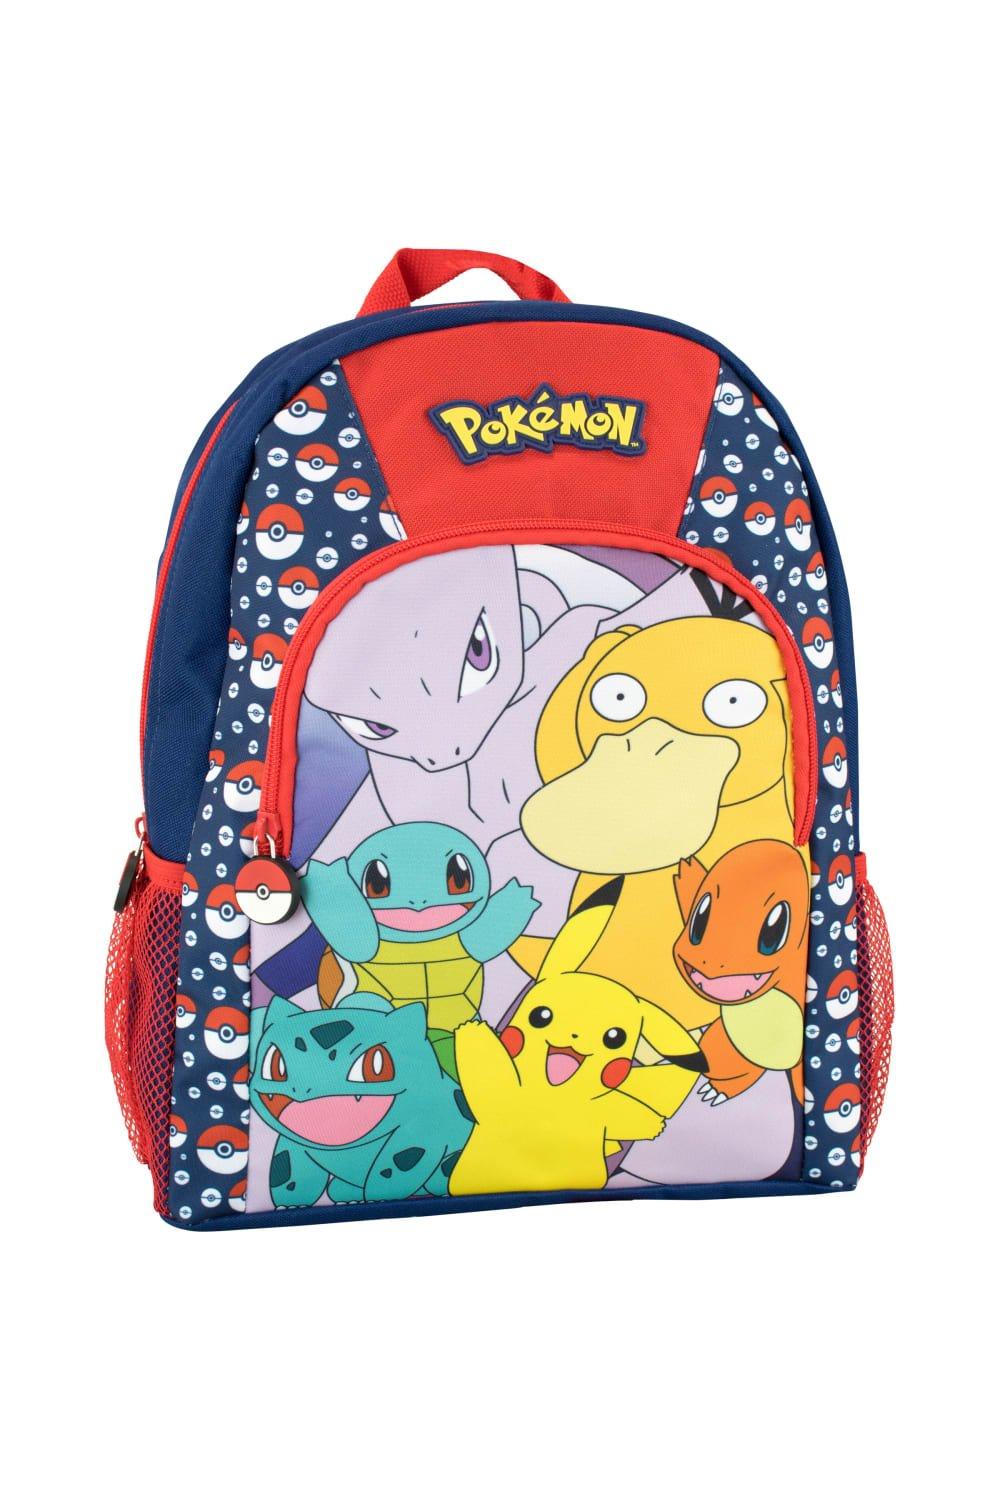 Детский рюкзак Pokemon, темно-синий сумка девочка в пикачу свитере серый